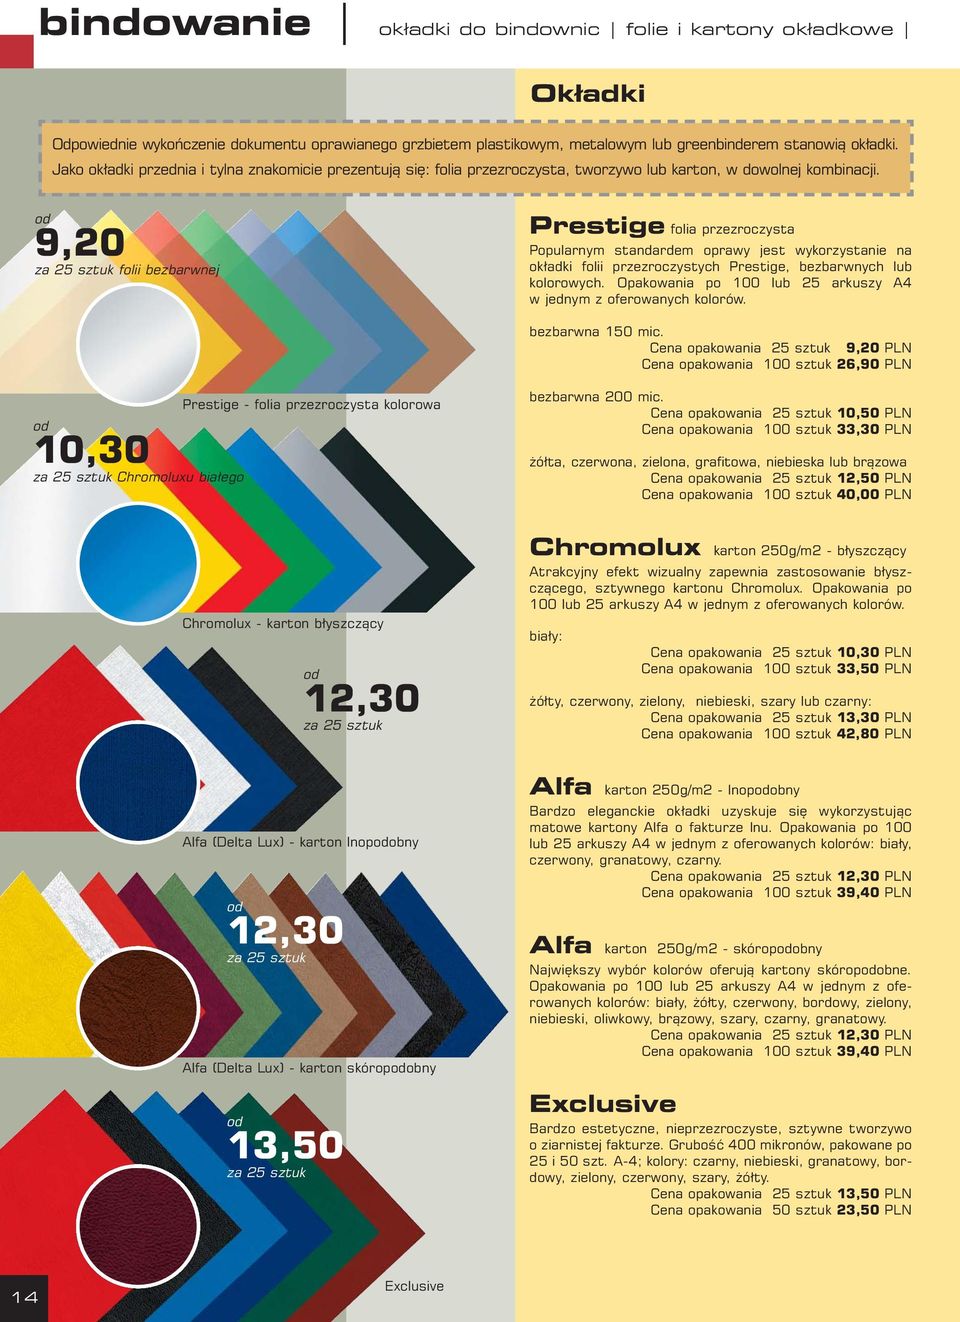 od 9,20 za 25 sztuk folii bezbarwnej Prestige folia przezroczysta Popularnym standardem oprawy jest wykorzystanie na okładki folii przezroczystych Prestige, bezbarwnych lub kolorowych.